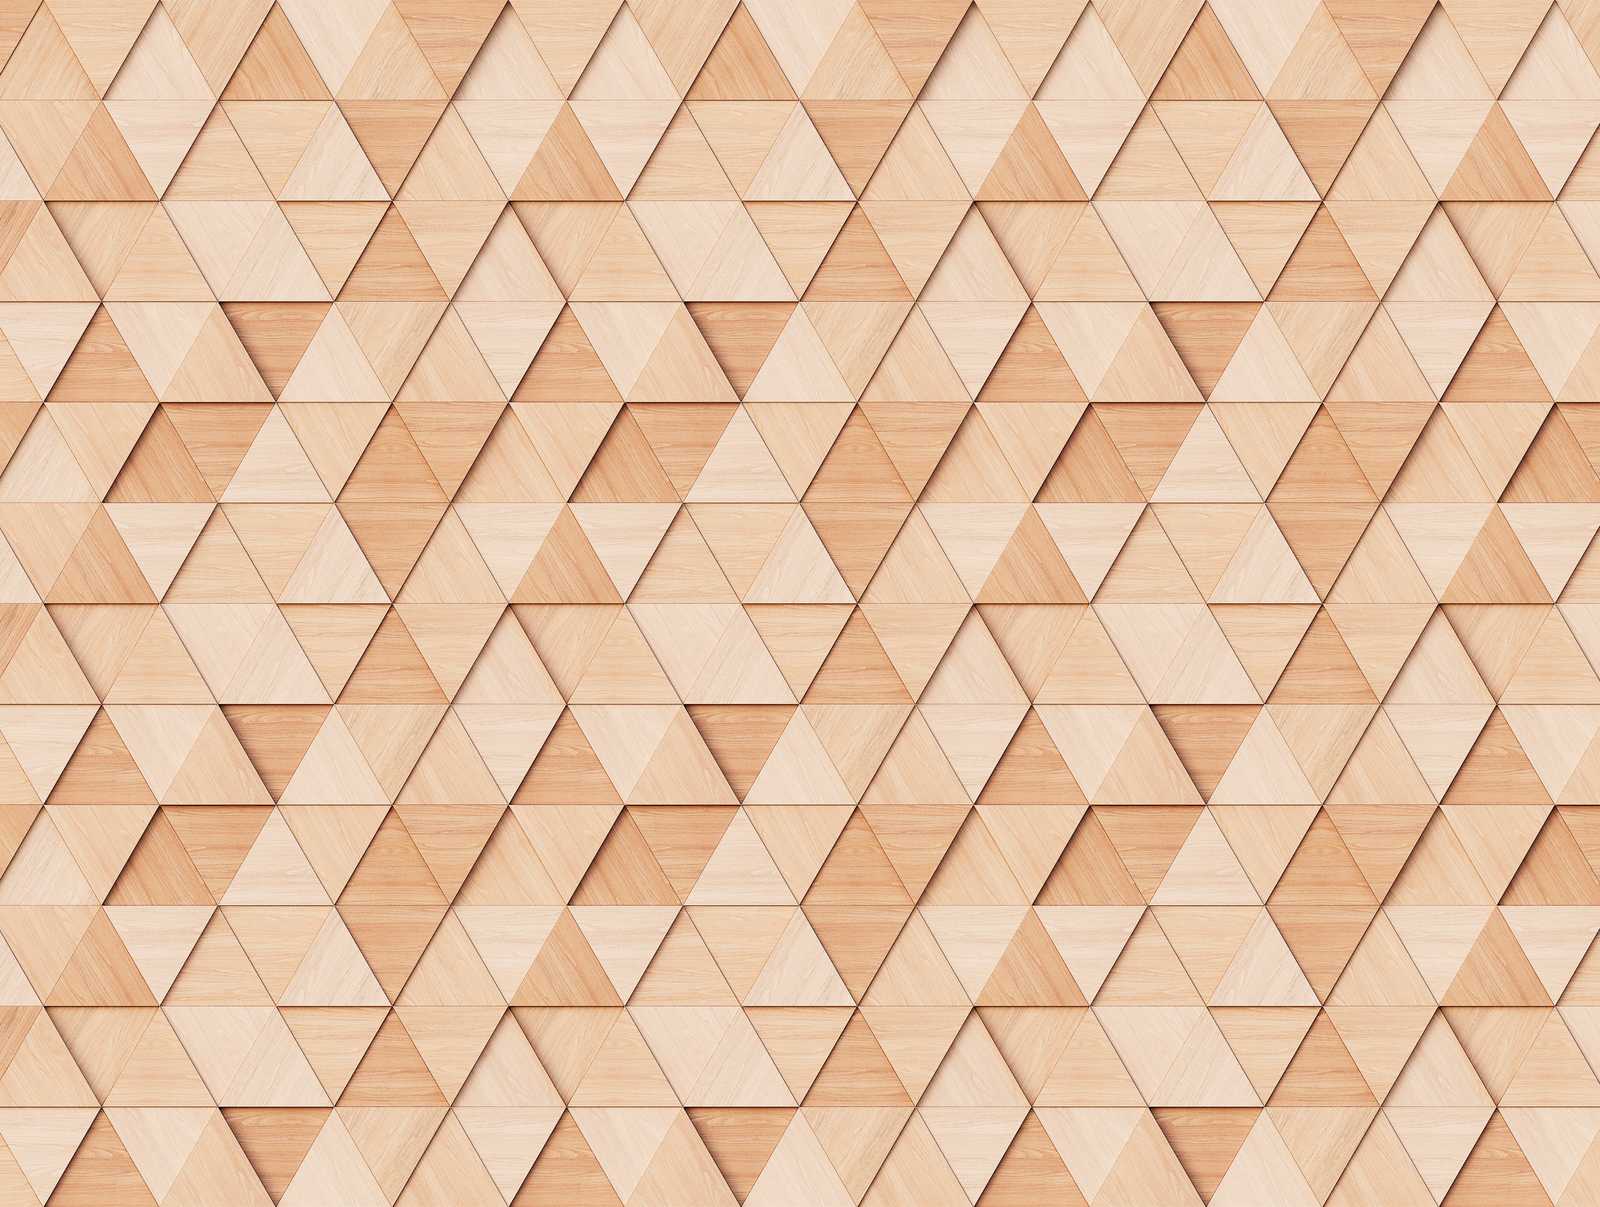             Nouveauté papier peint - papier peint à motifs imitation bois Design avec motif triangulaire 3D
        